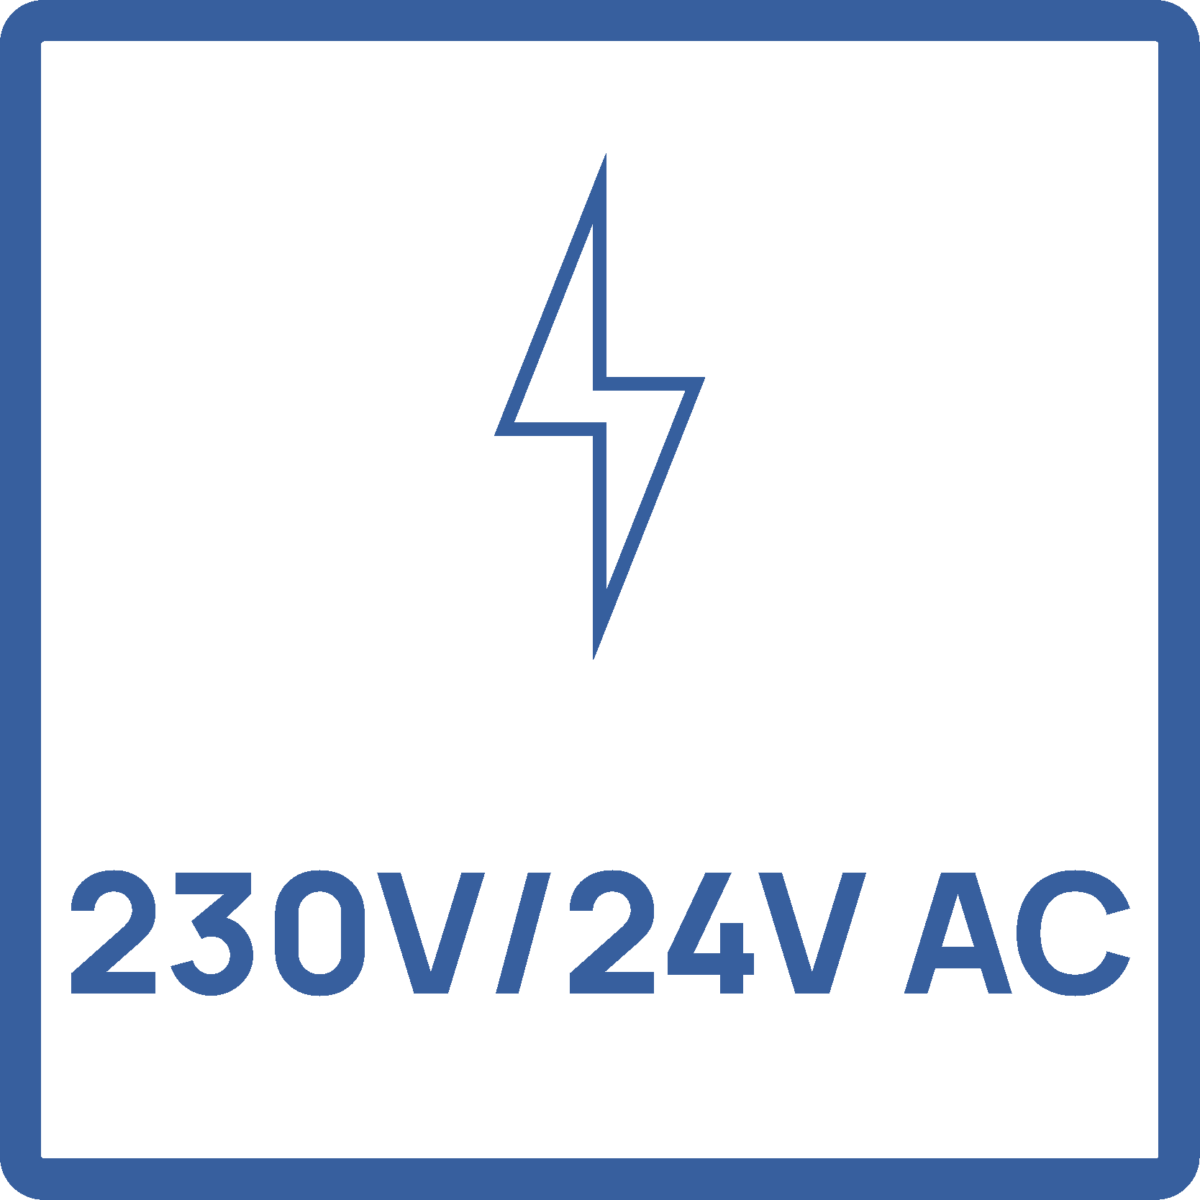 230V-24VAC